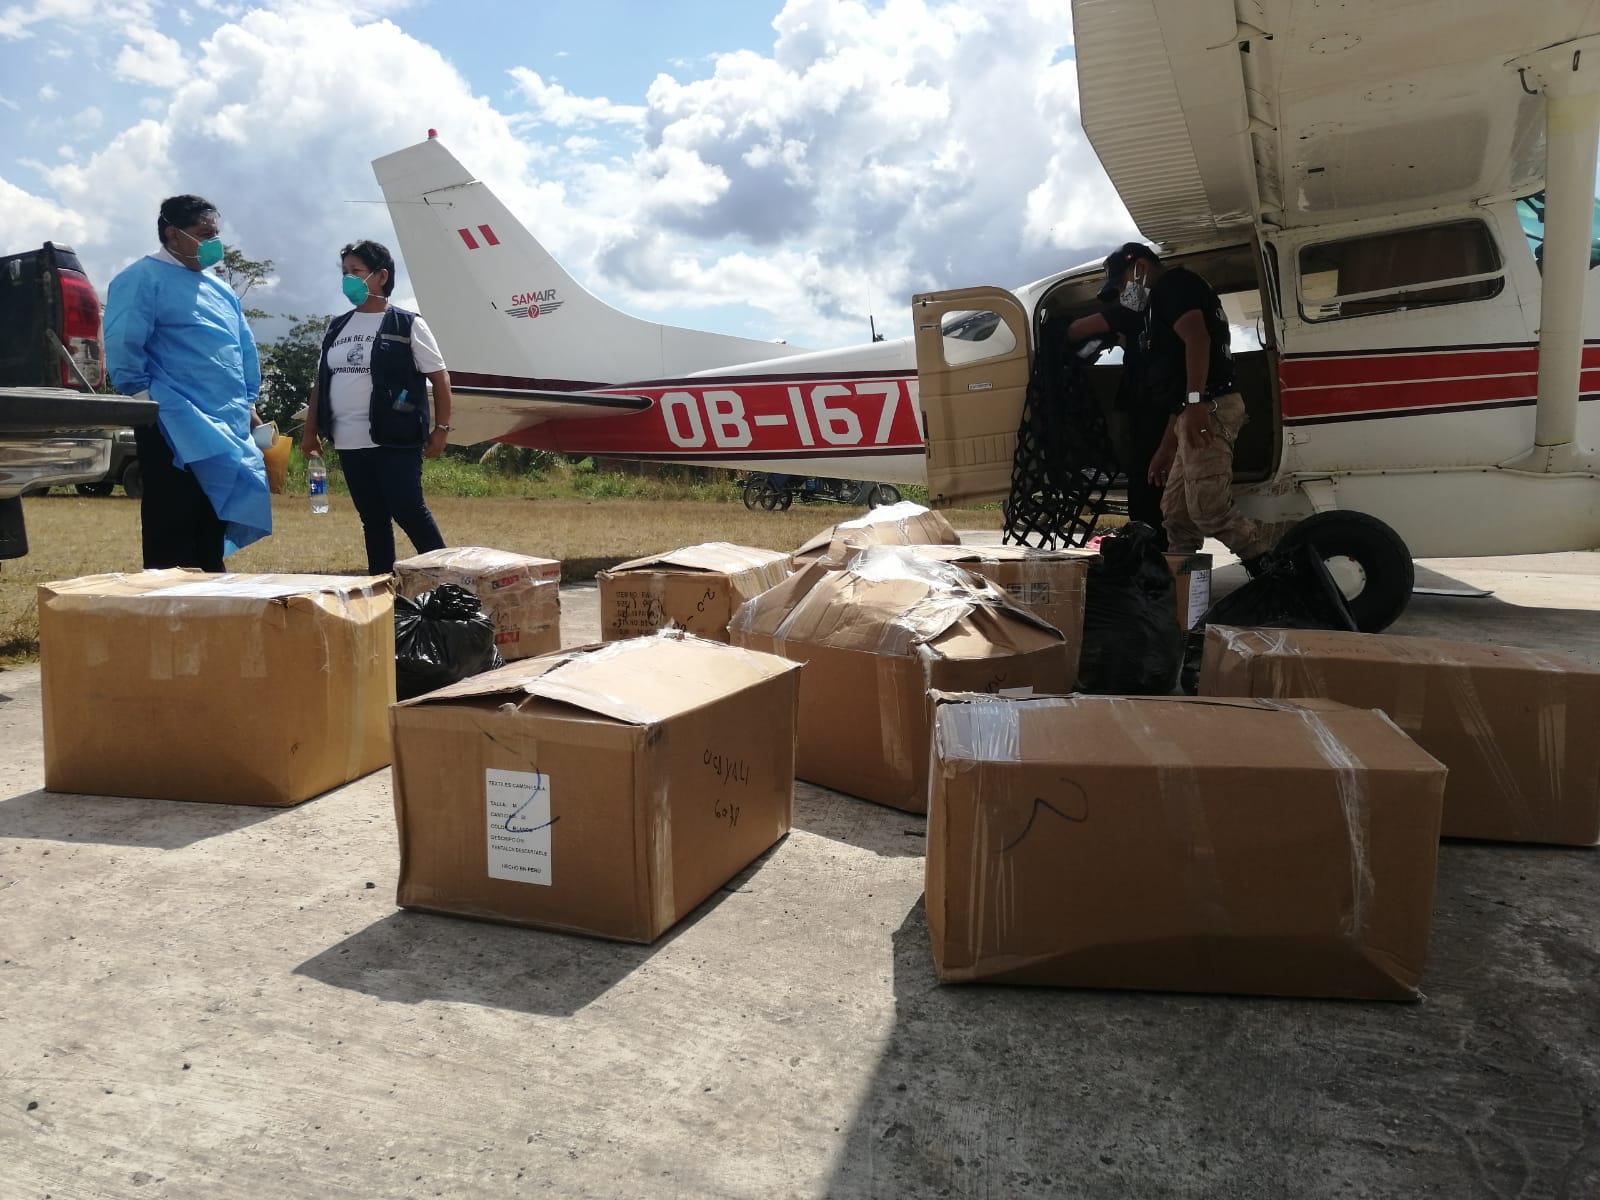 PIACI Medicinas y pruebas rápidas llegaron a Sepahua por vía aérea. Foto: Mcrored de Salud Sepahua.